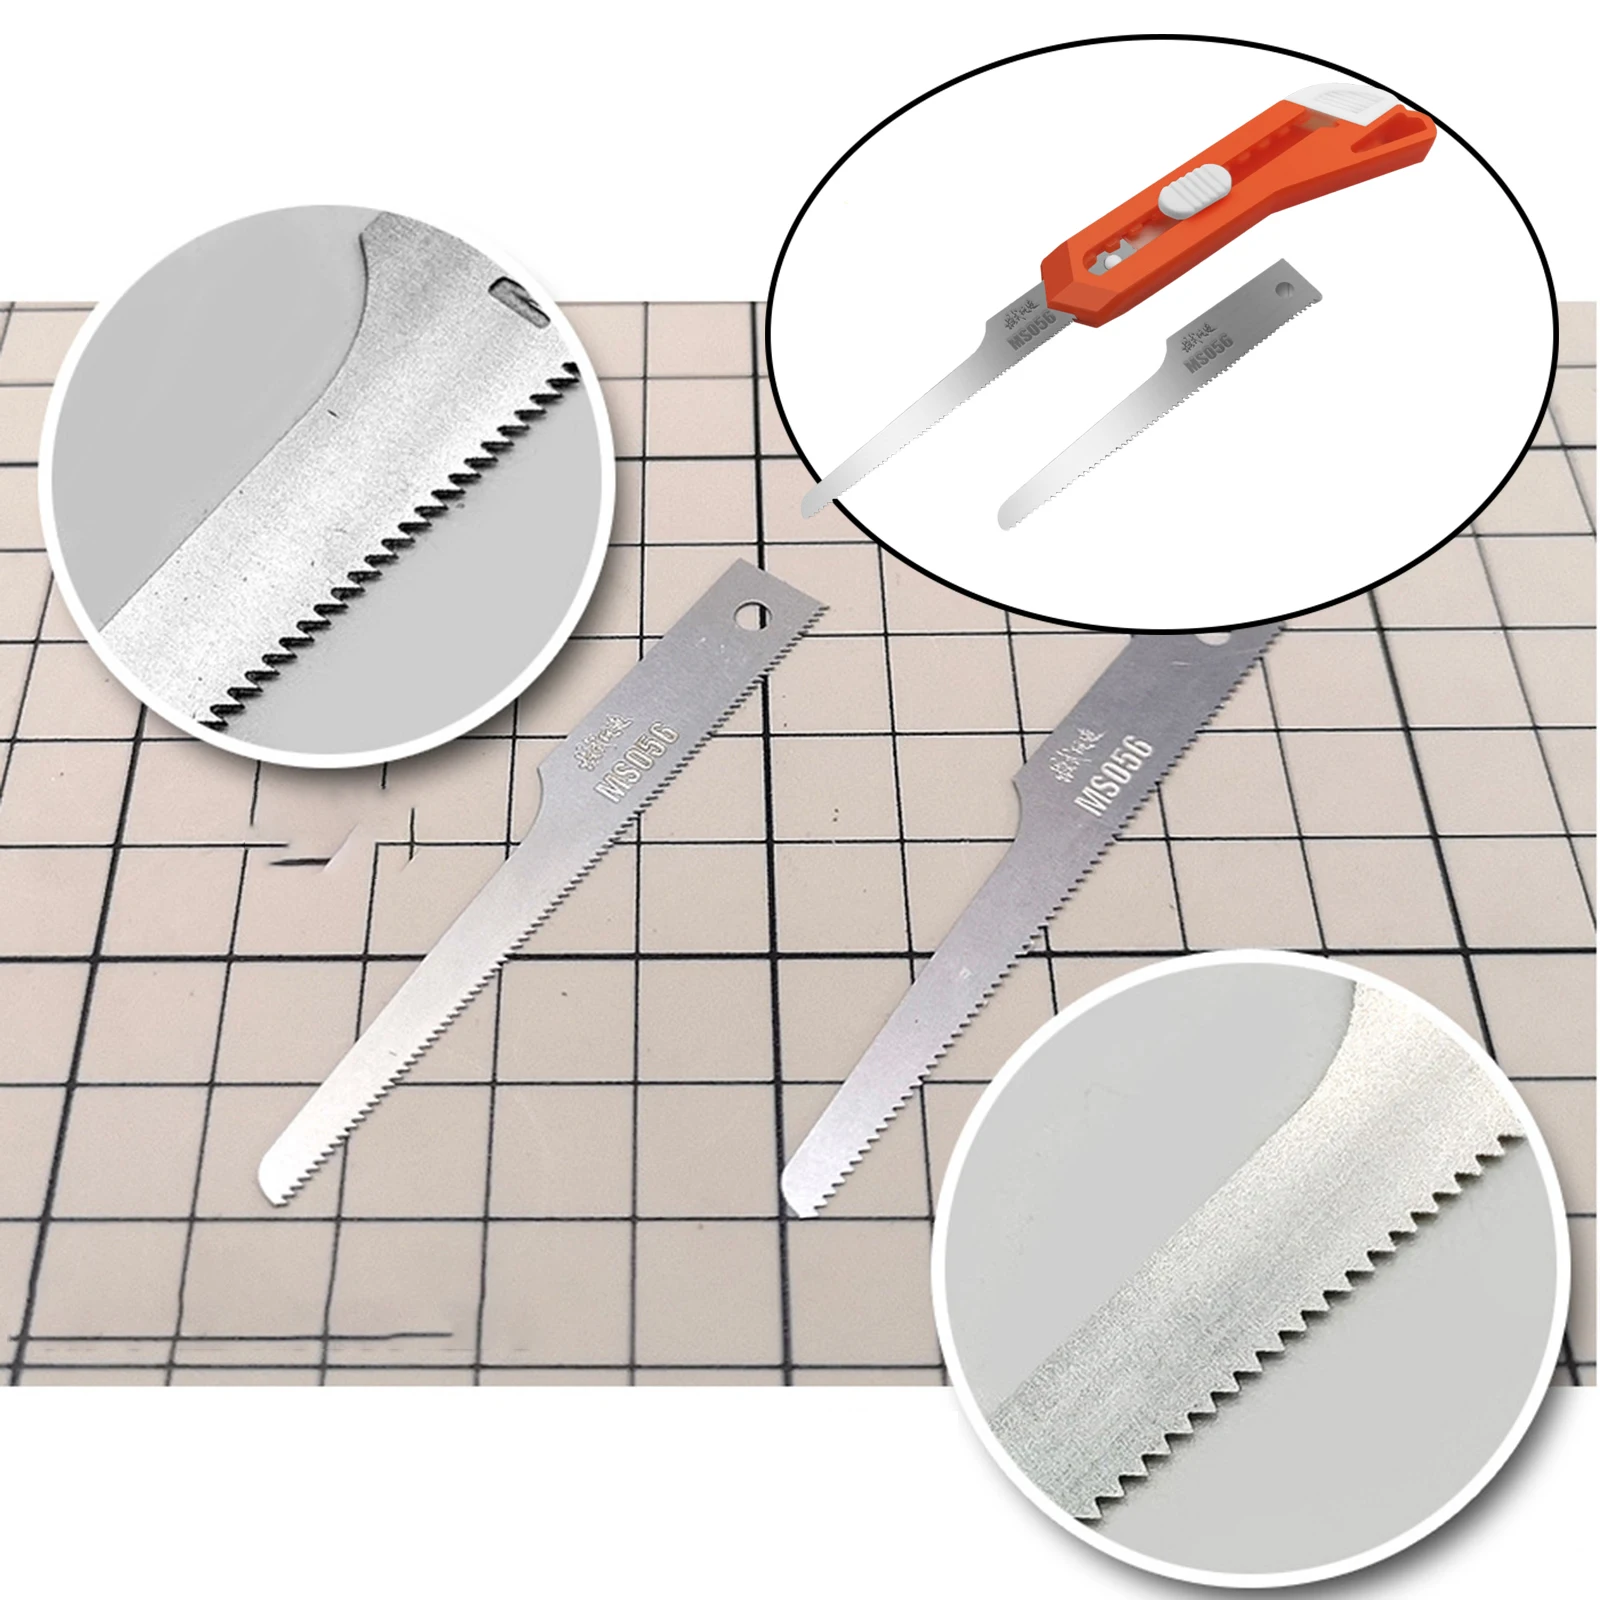 Handy Model Cutting Mini Hand Saw Knife Blades 2 in 1 DIY Craft Hacksaw Tool